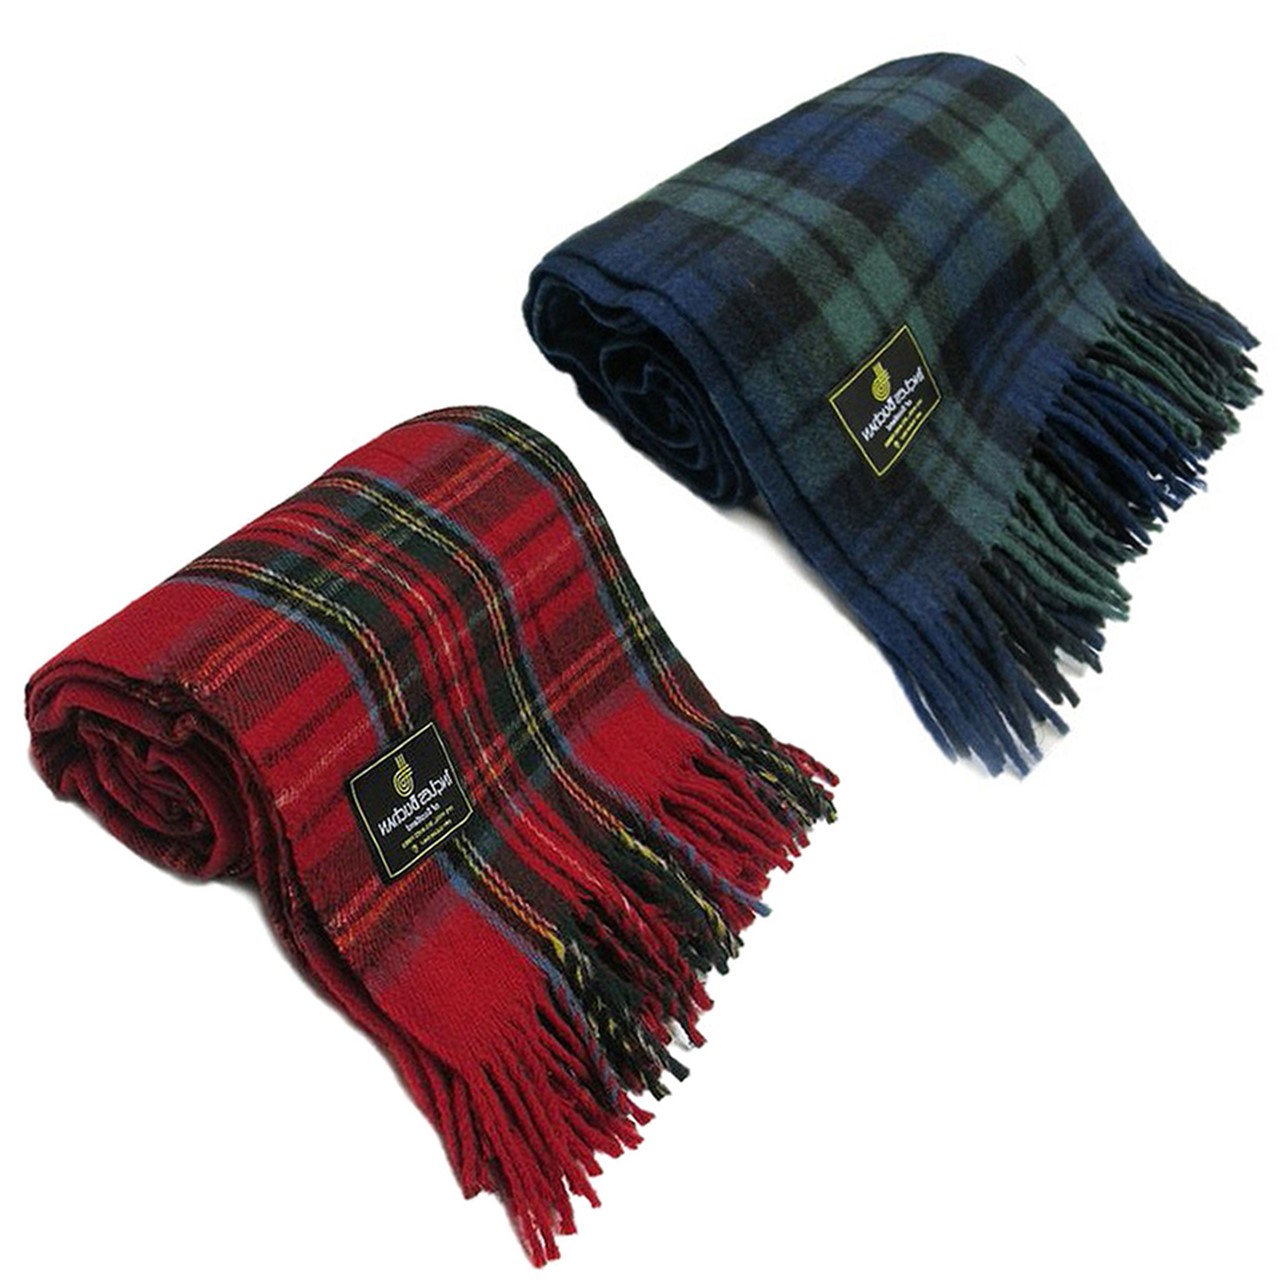 Stunning Scottish Large Tartan Travel Rug Blanket Throw Scottish All Wool 